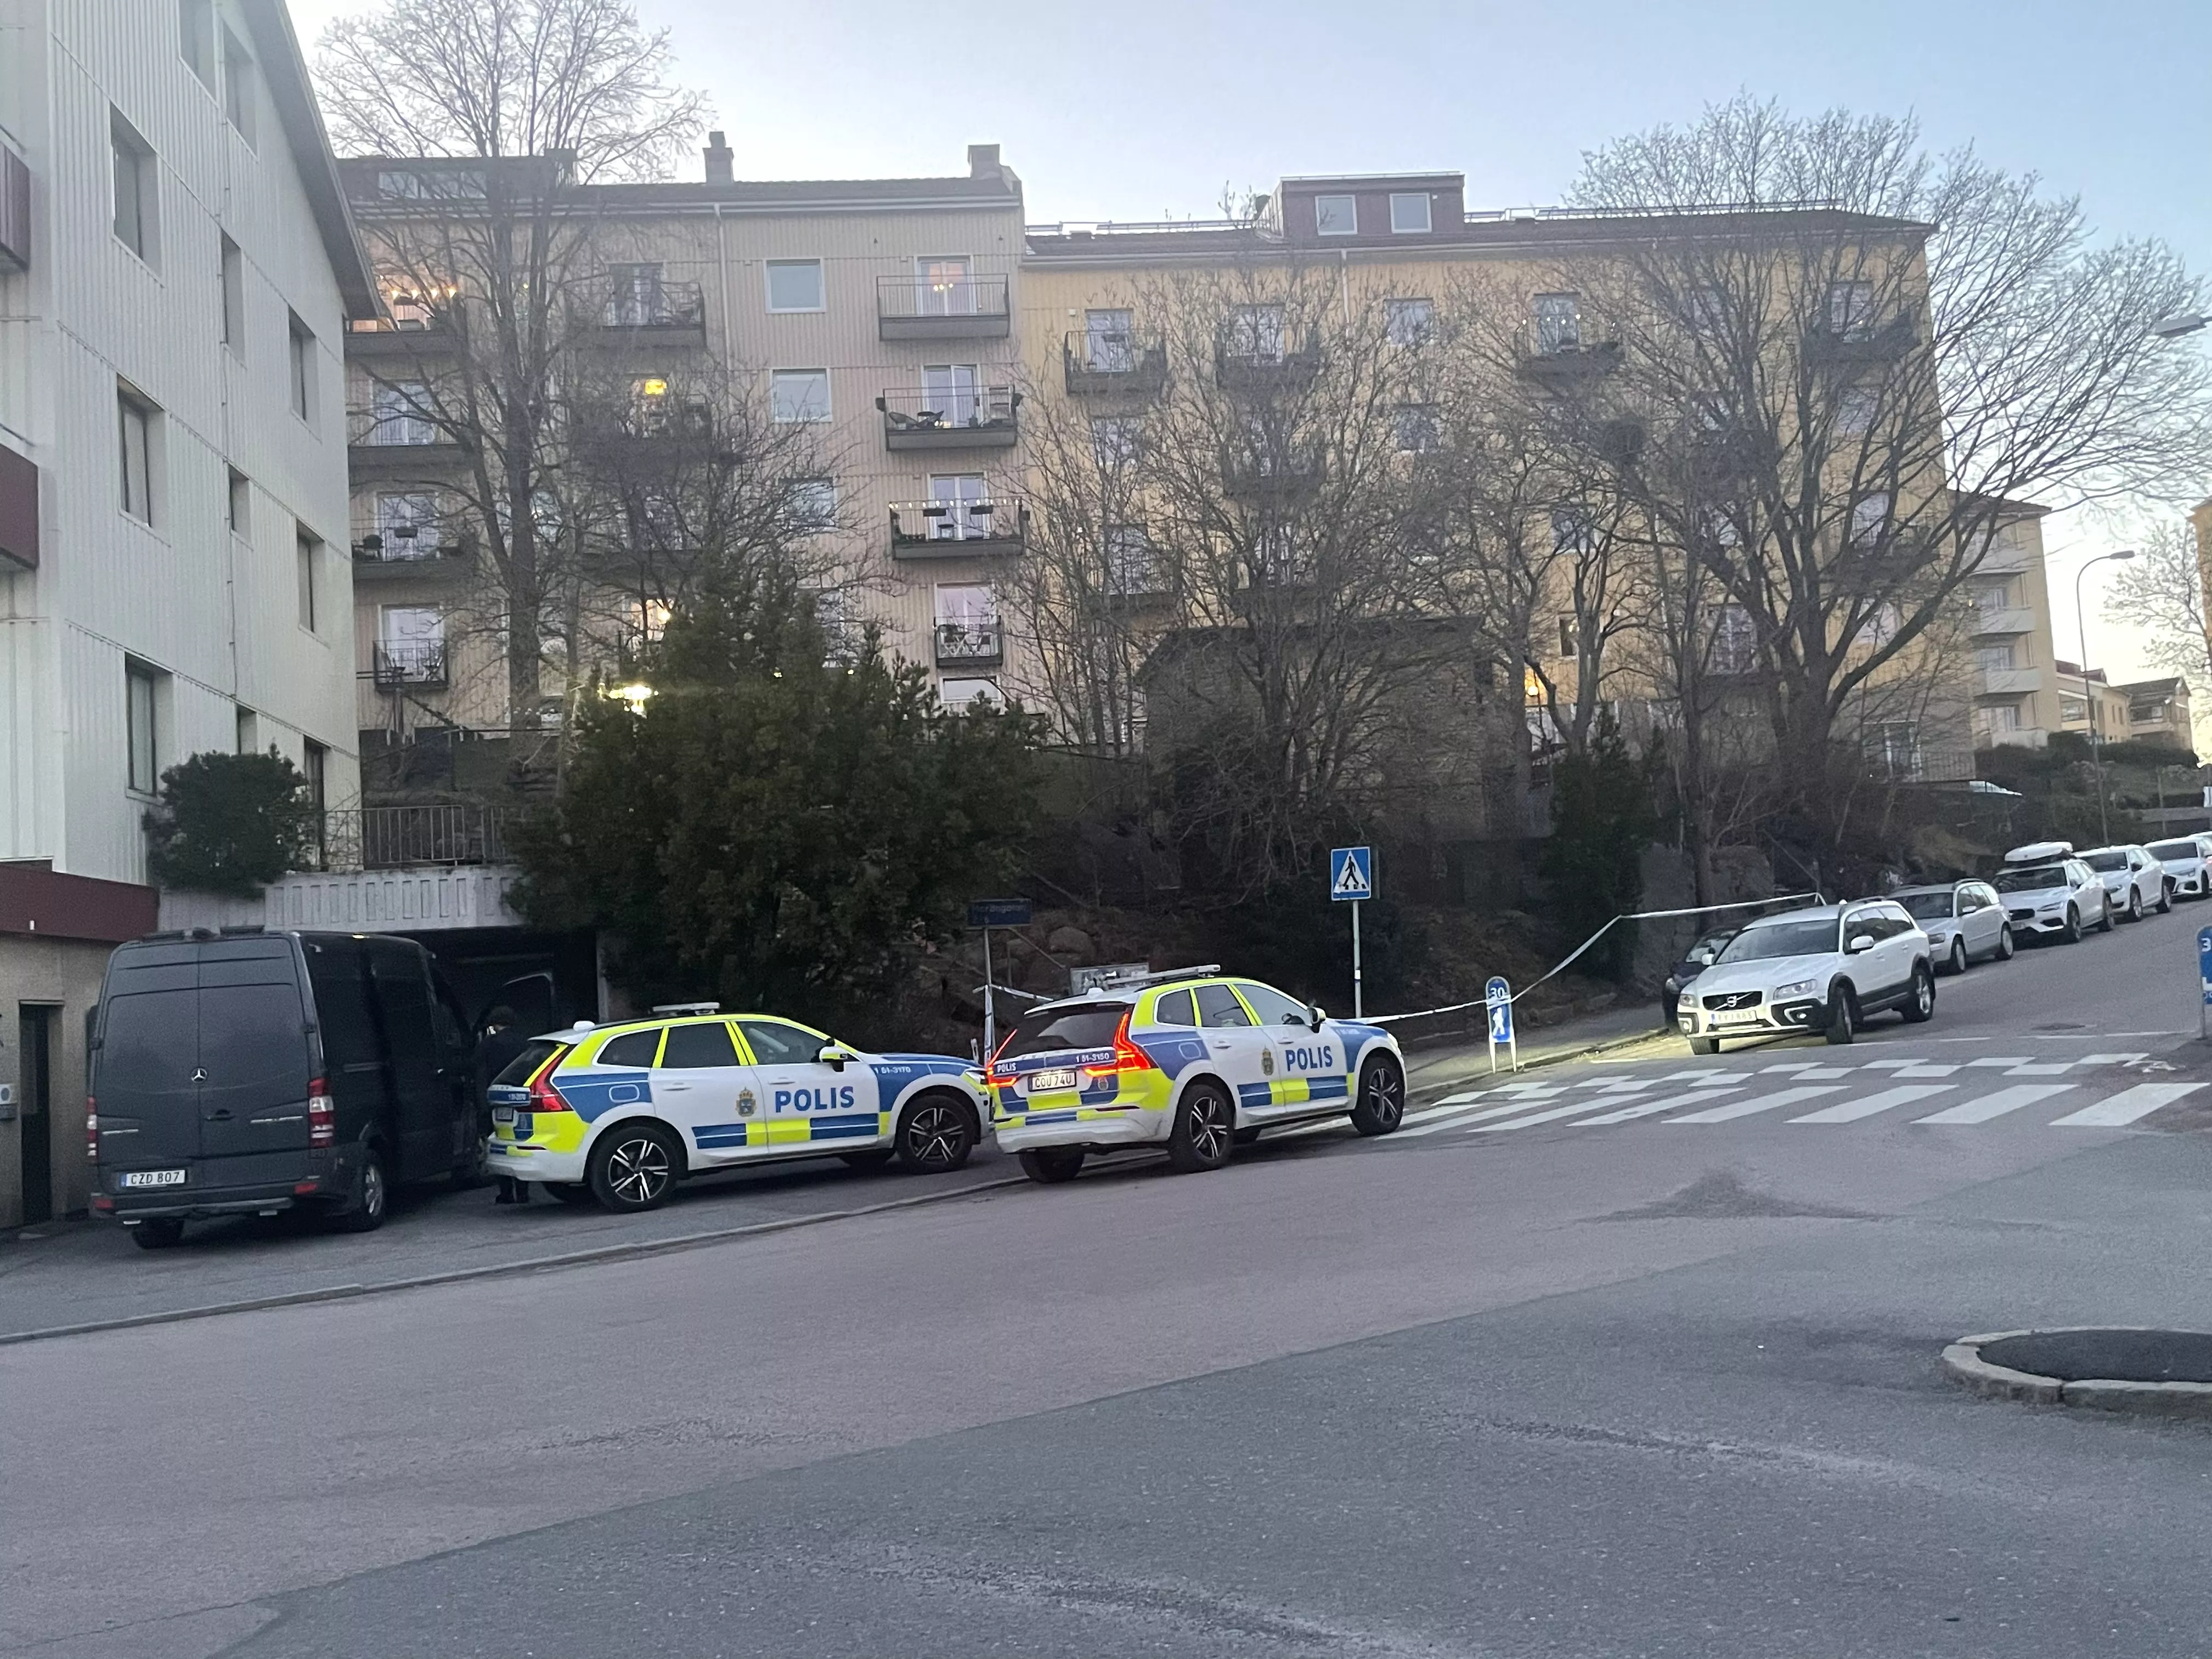 25 åring skjuten i Göteborg